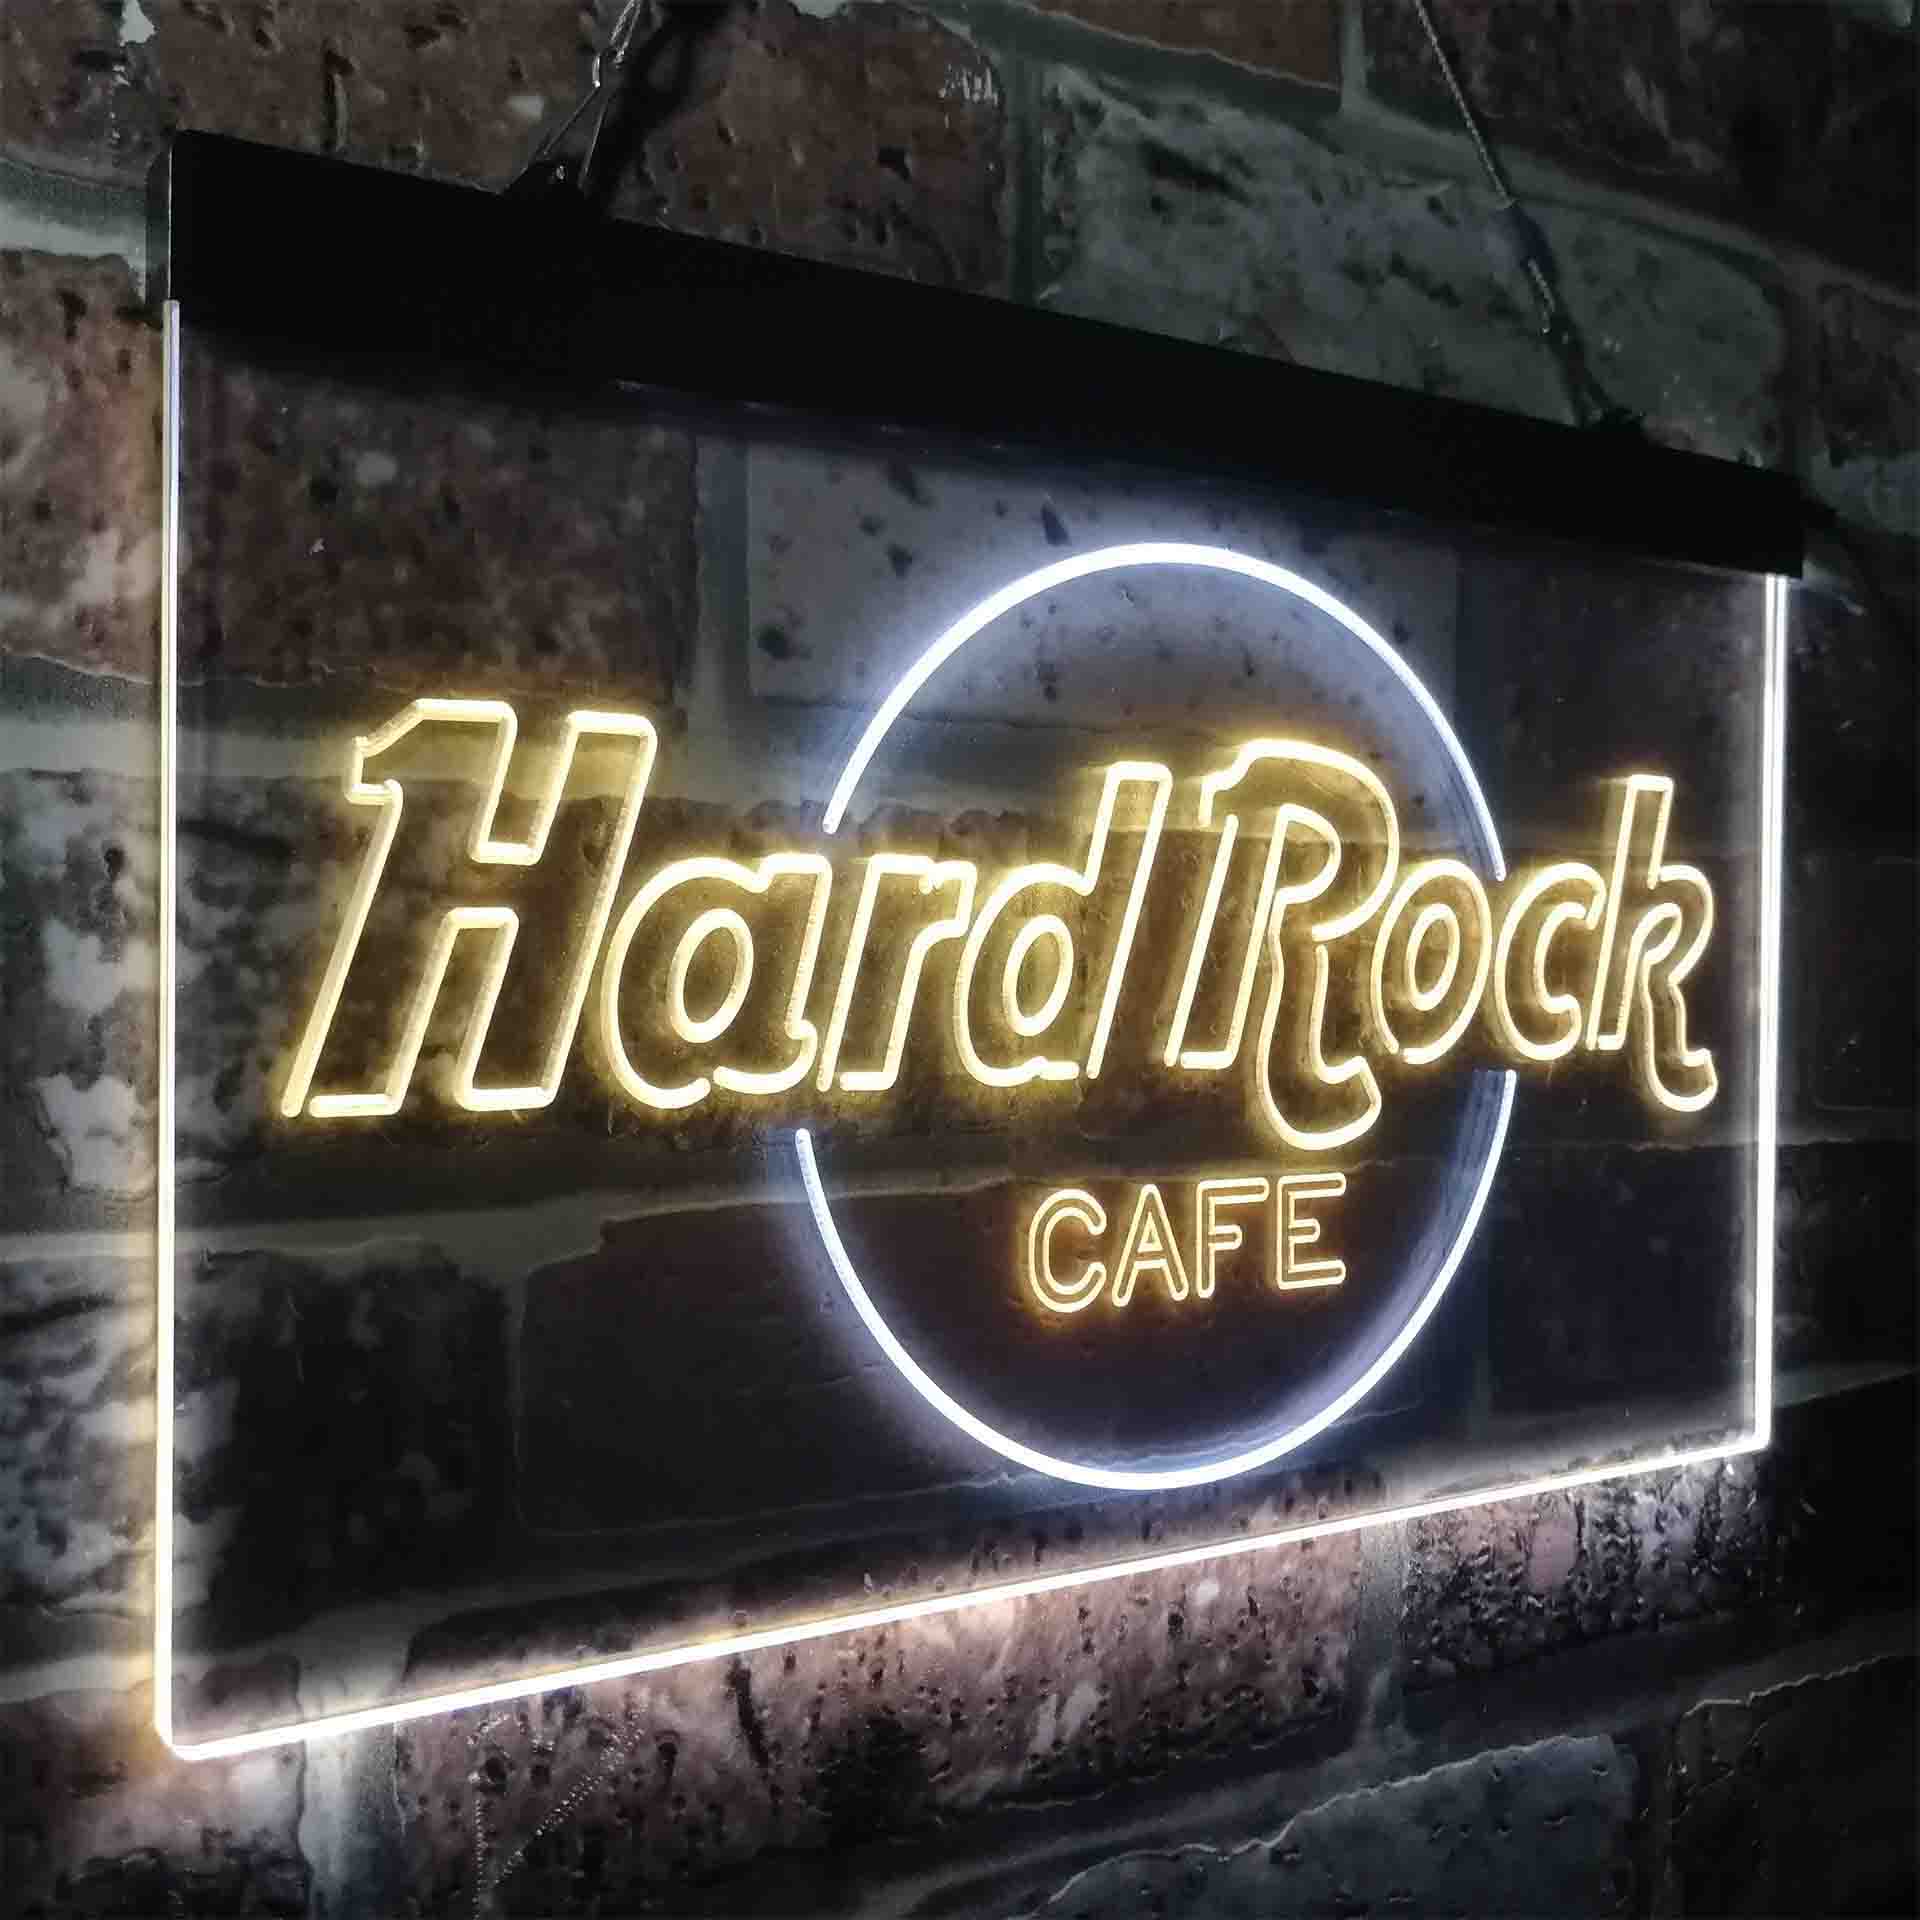 Hard Rock Cafe Restaurant LED Neon Sign